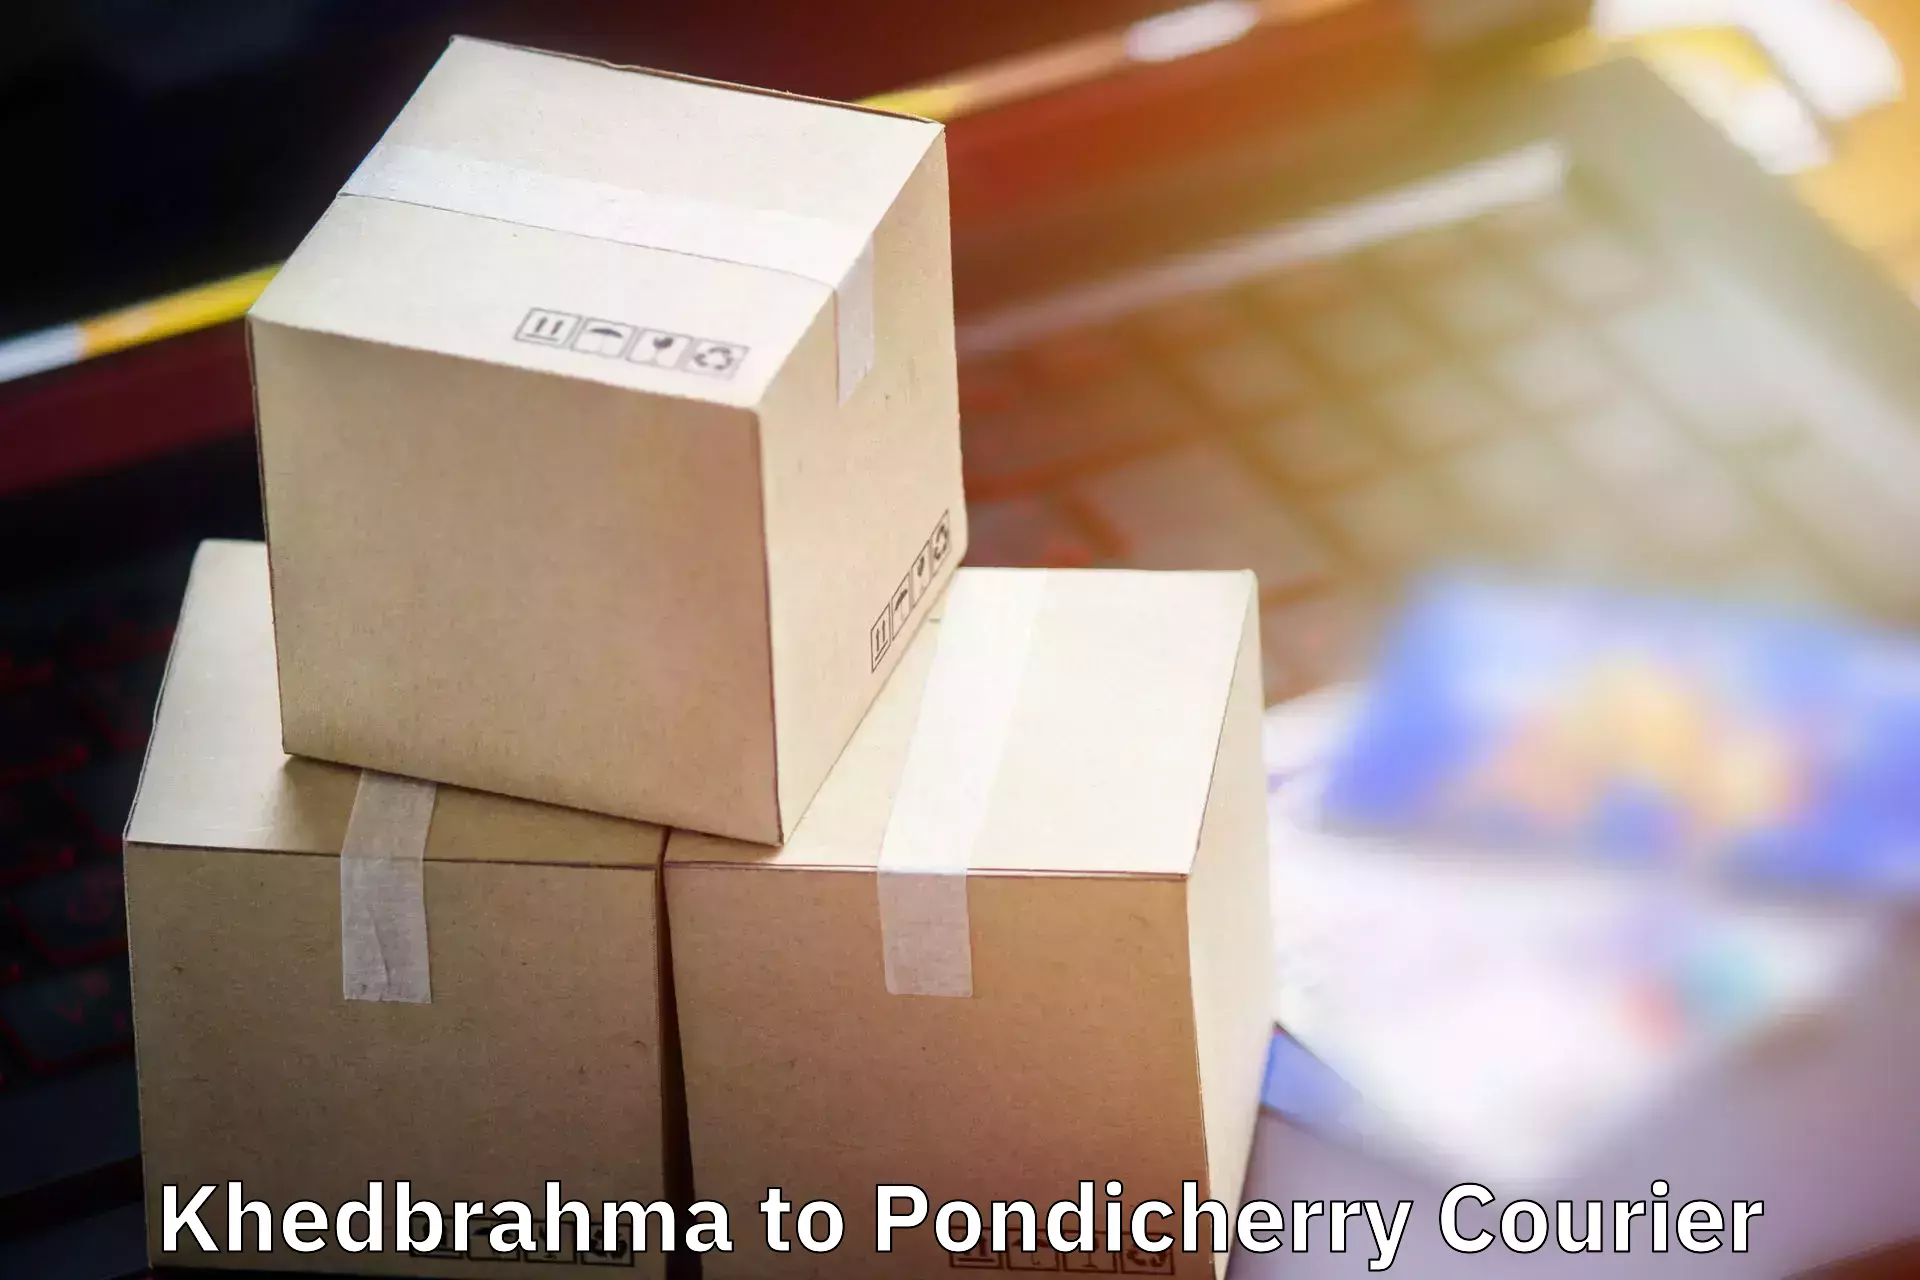 Electronic items luggage shipping Khedbrahma to Pondicherry